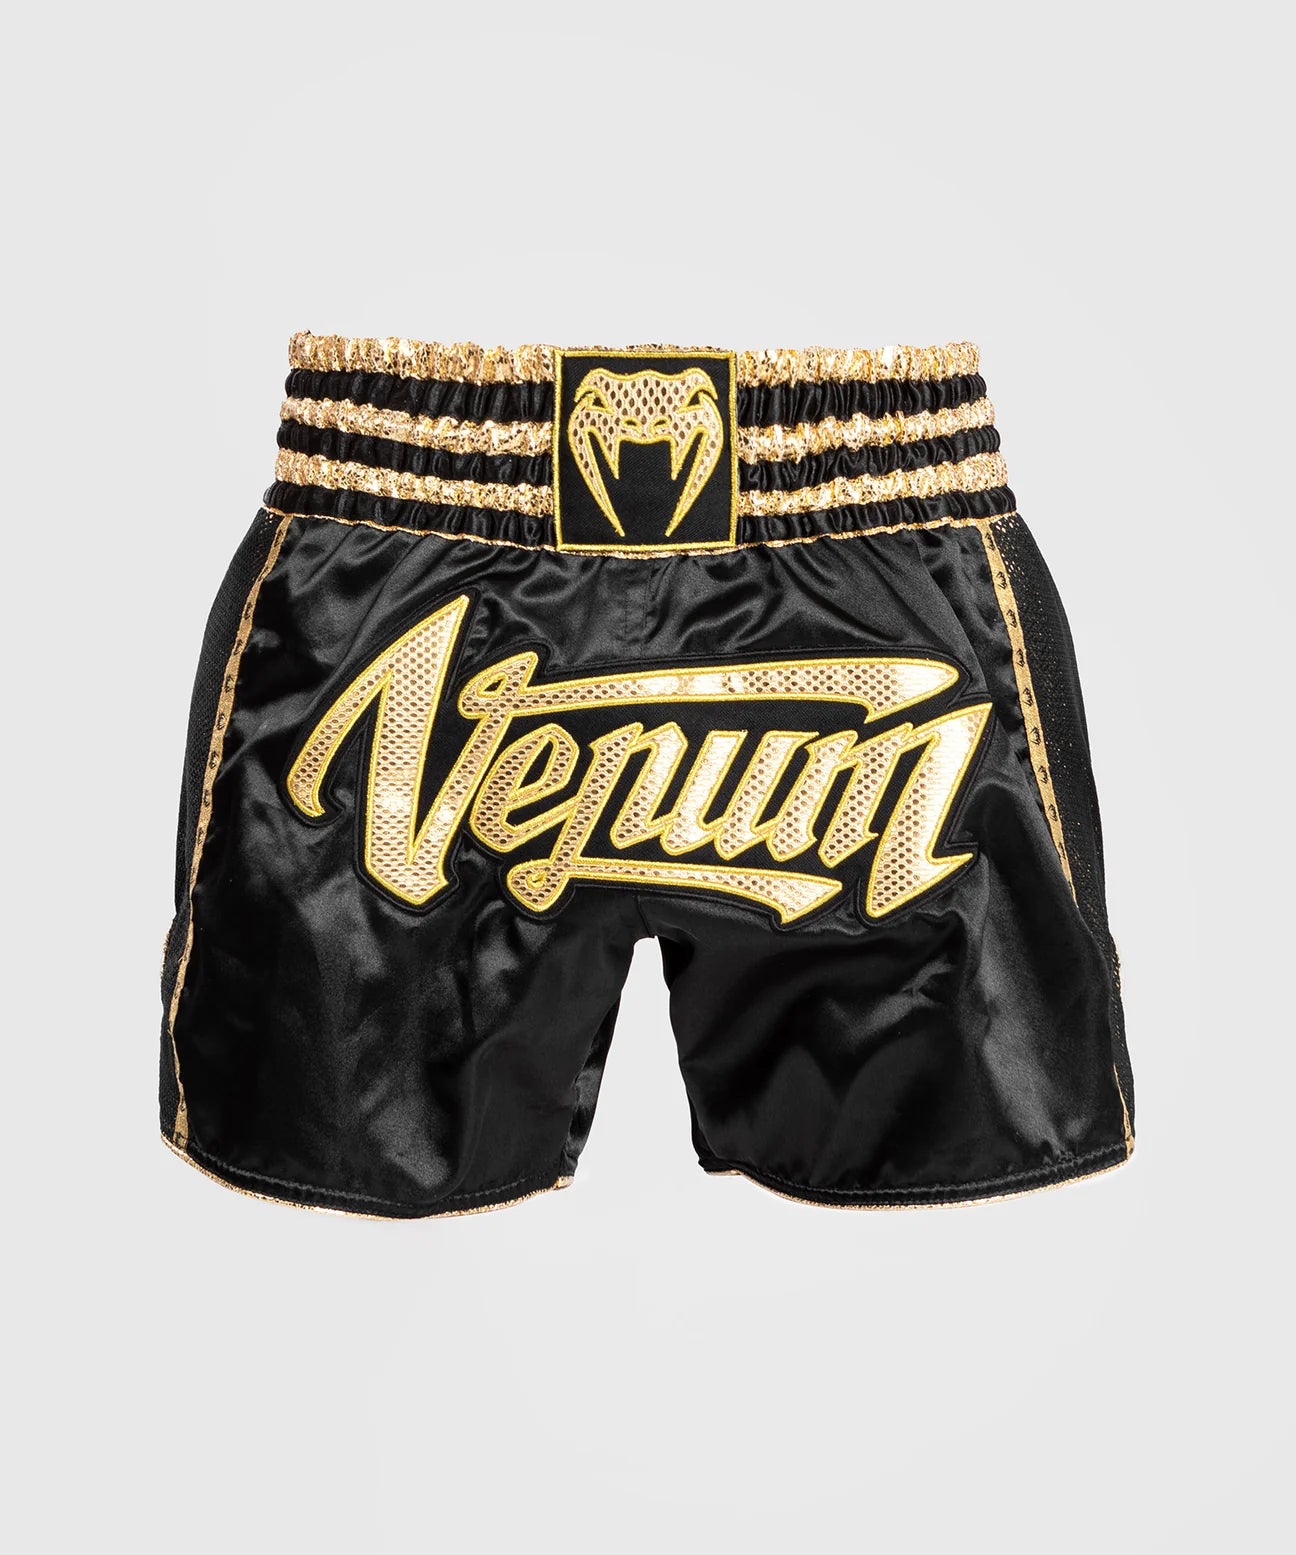 Venum Absolute 2.0 Muay Thai Shorts